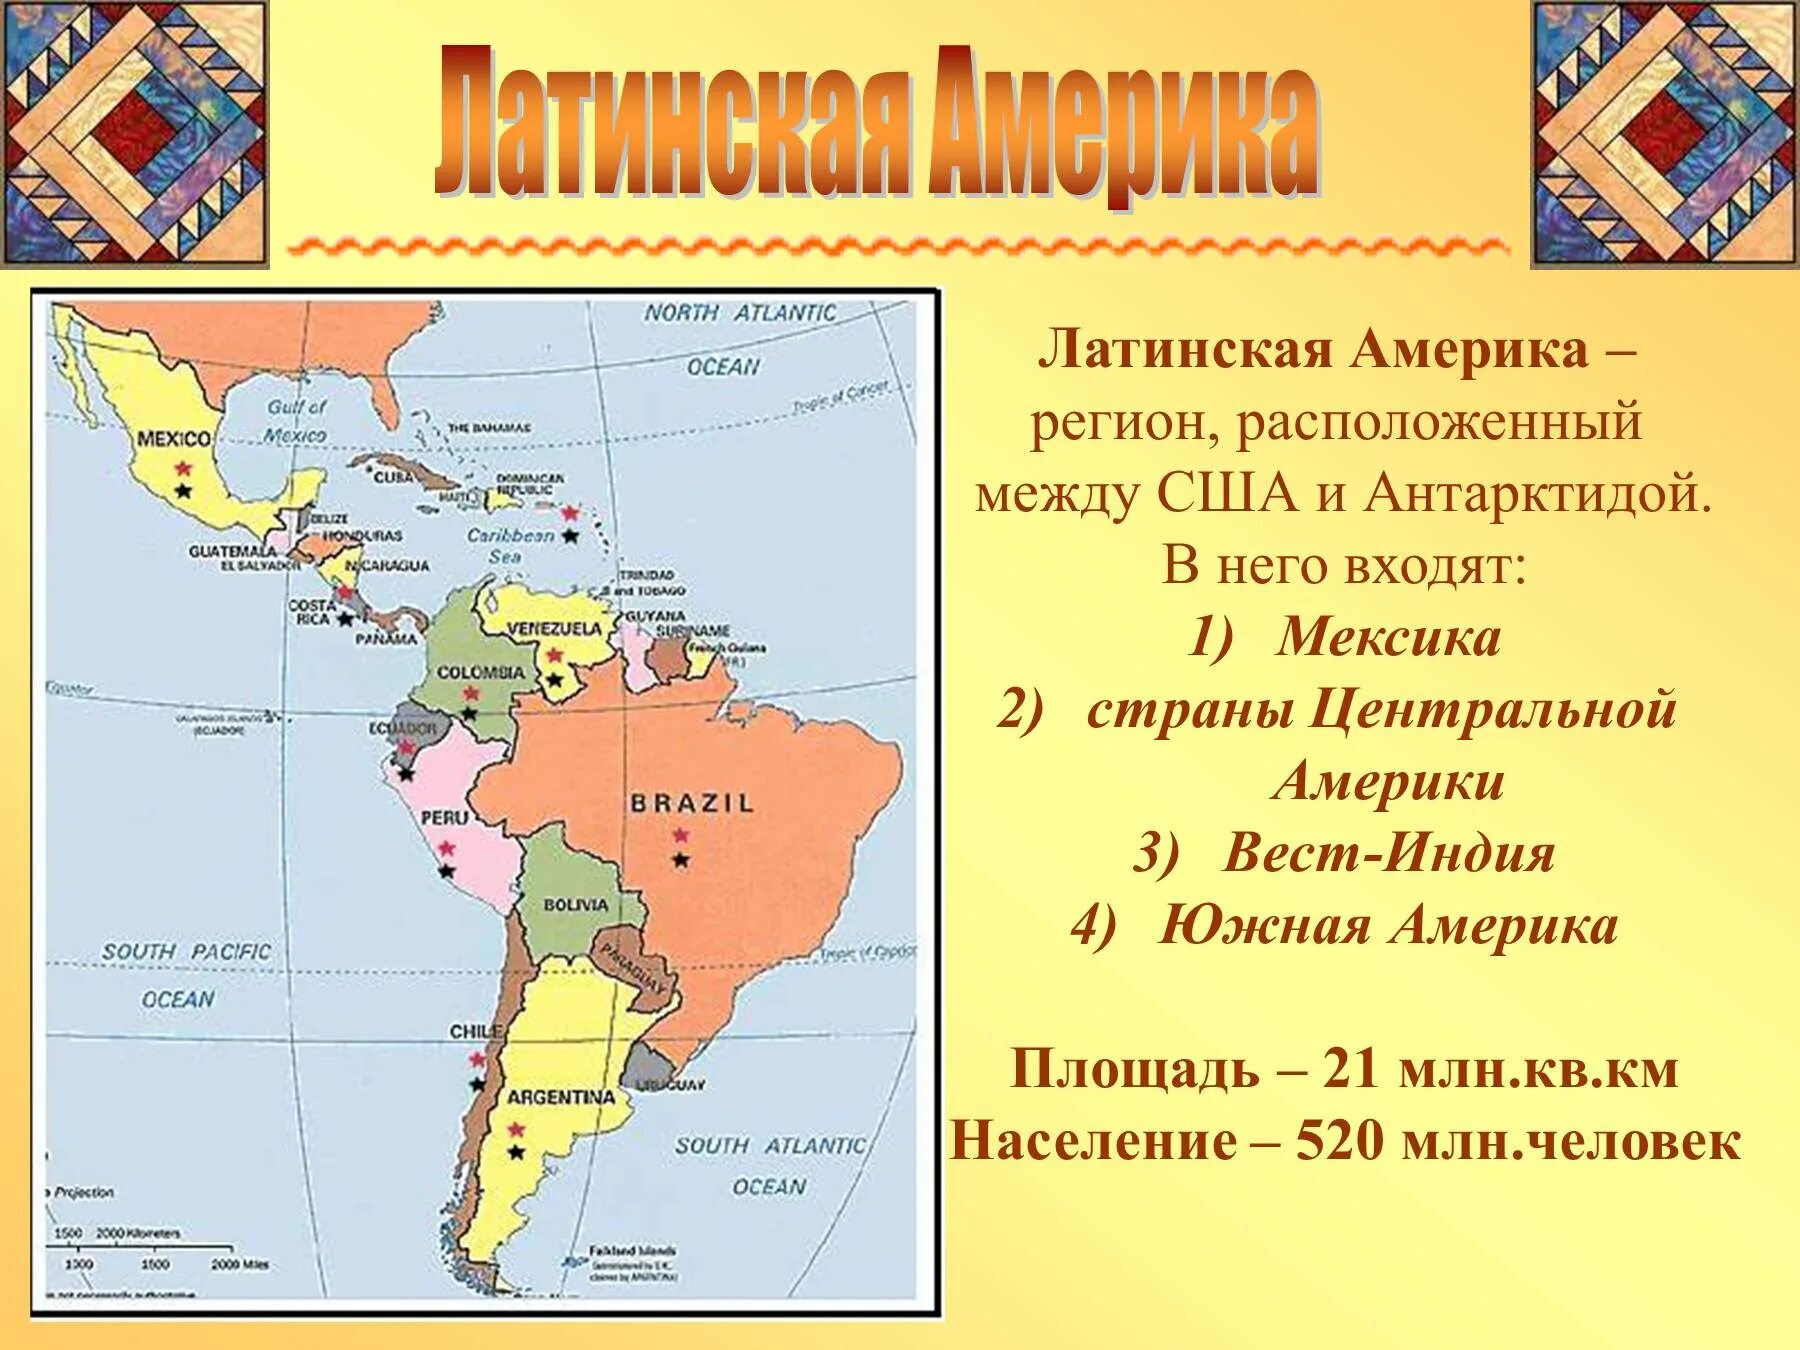 Какие регионы относятся к латинской америке. Политическая карта Латинской Америки субрегионы. Состав Латинской Америки карта. Государства на территории Латинской Америки. Границы всех государств Латинской Америки и их столицы на карте.